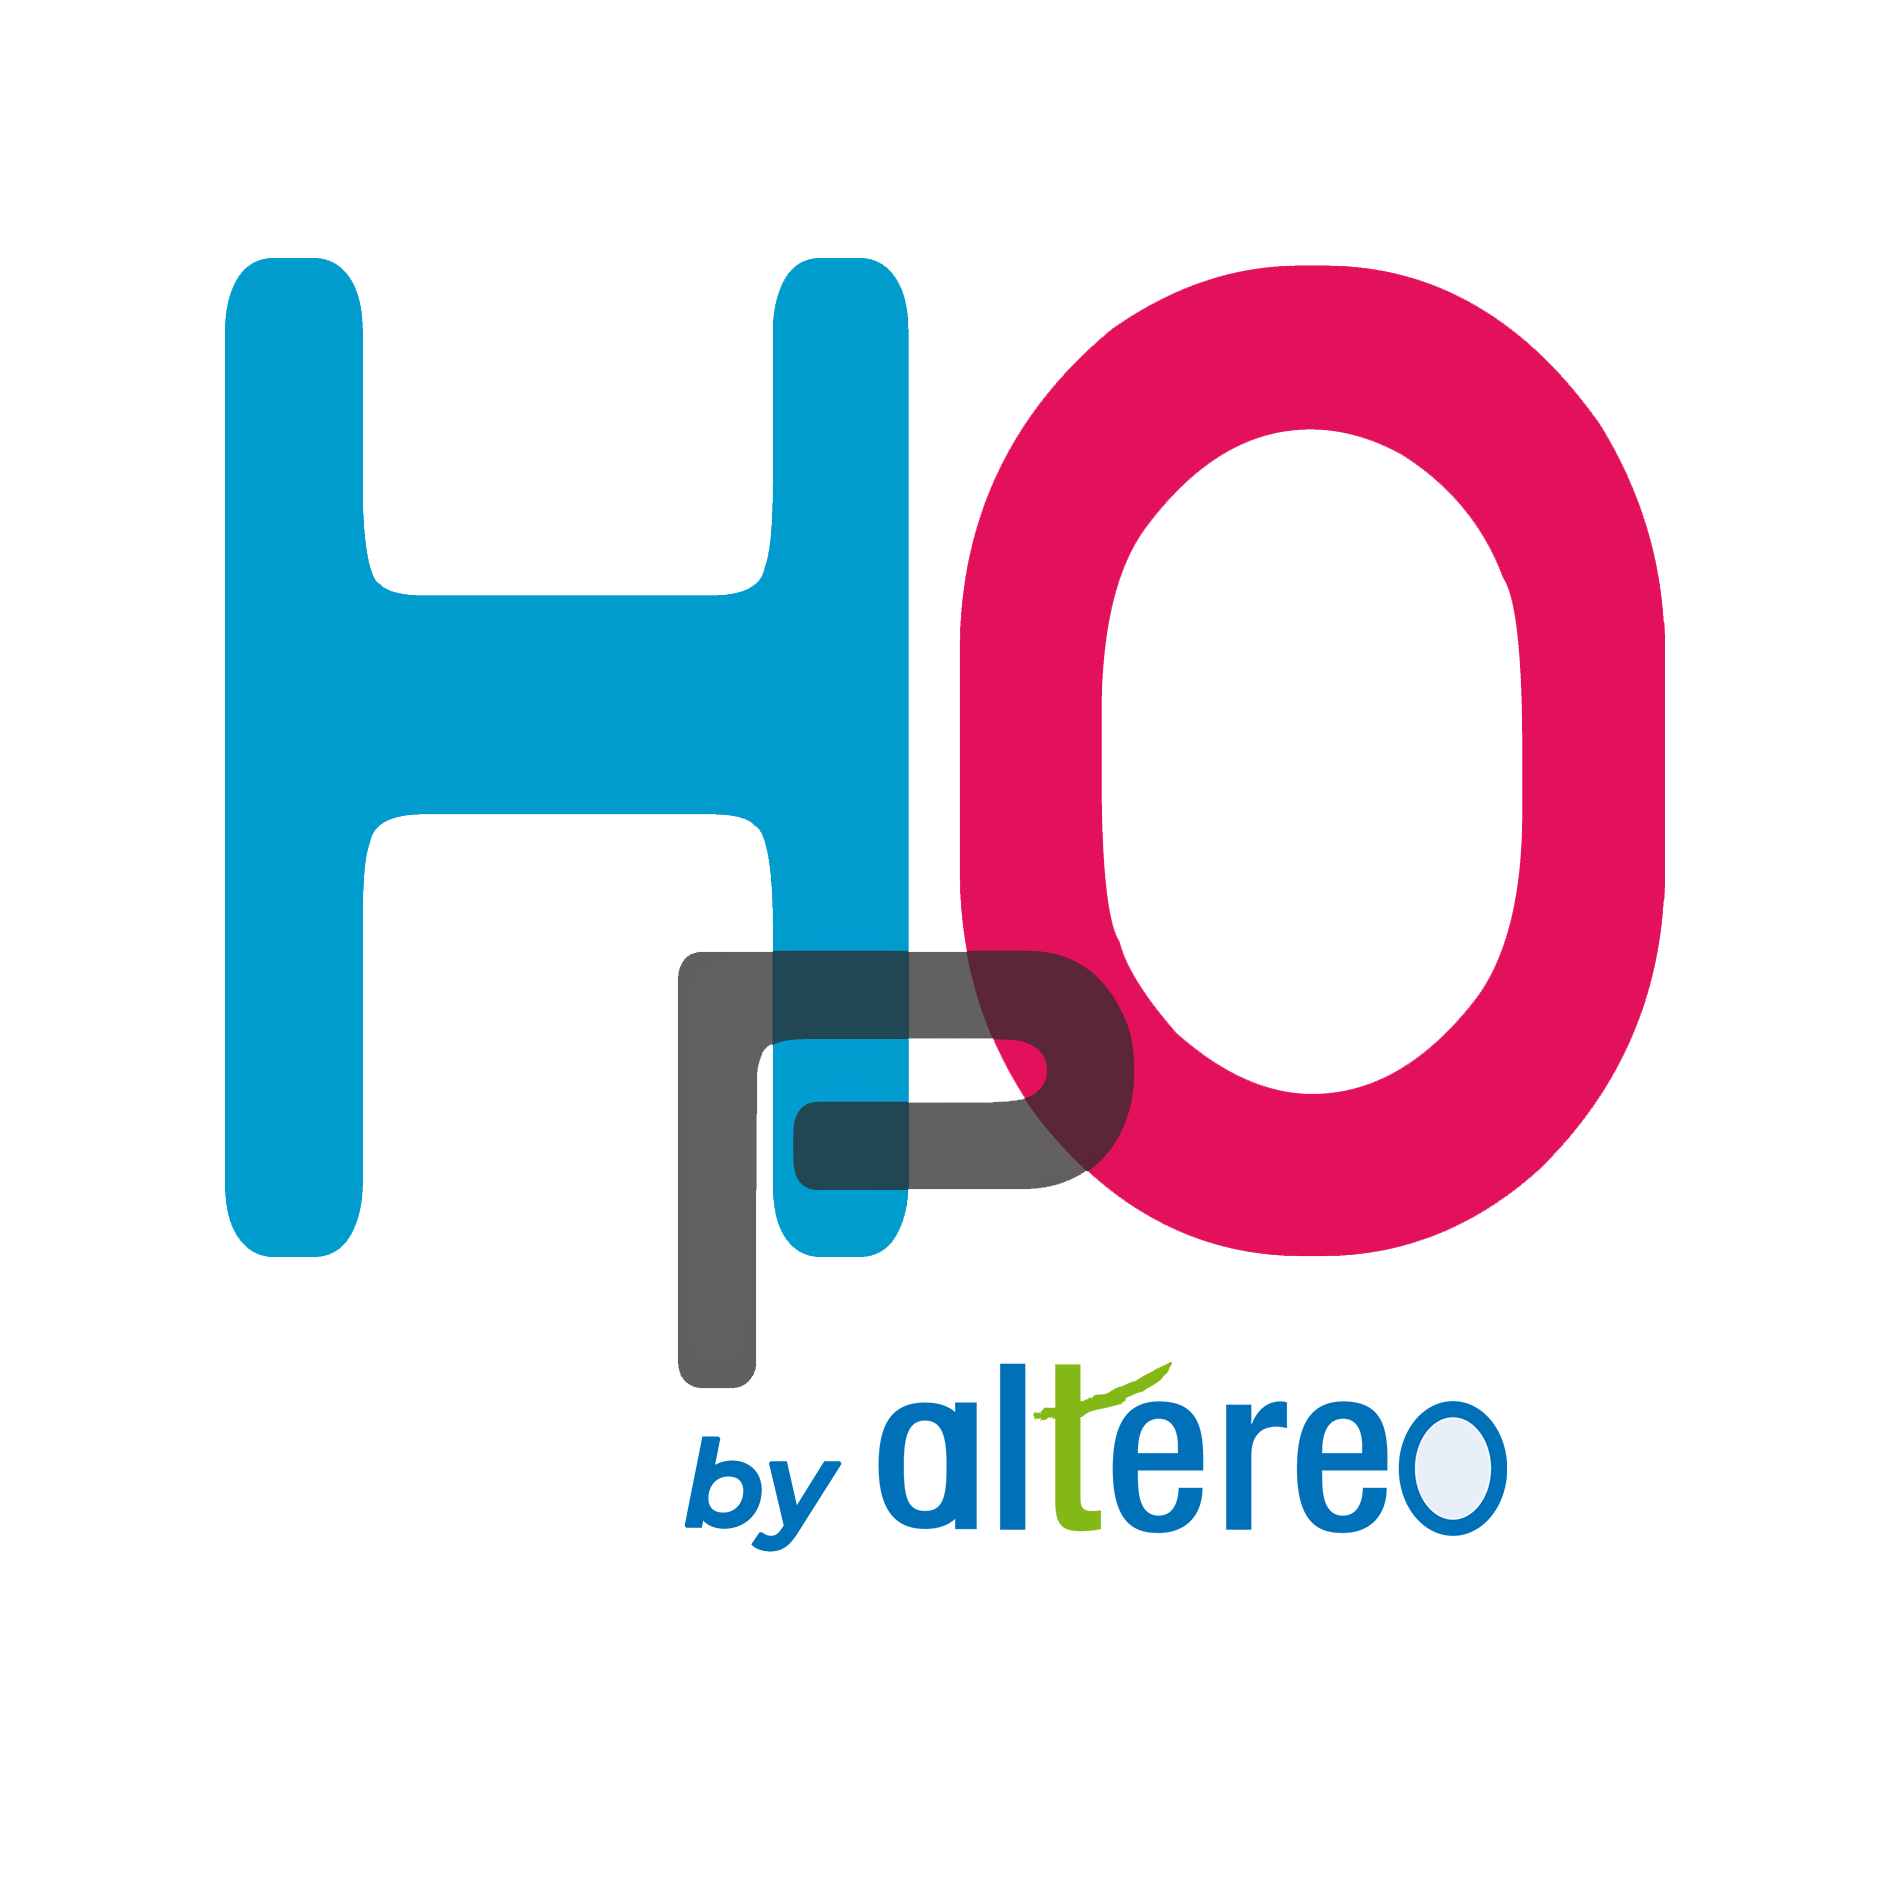 HpO by Altereo